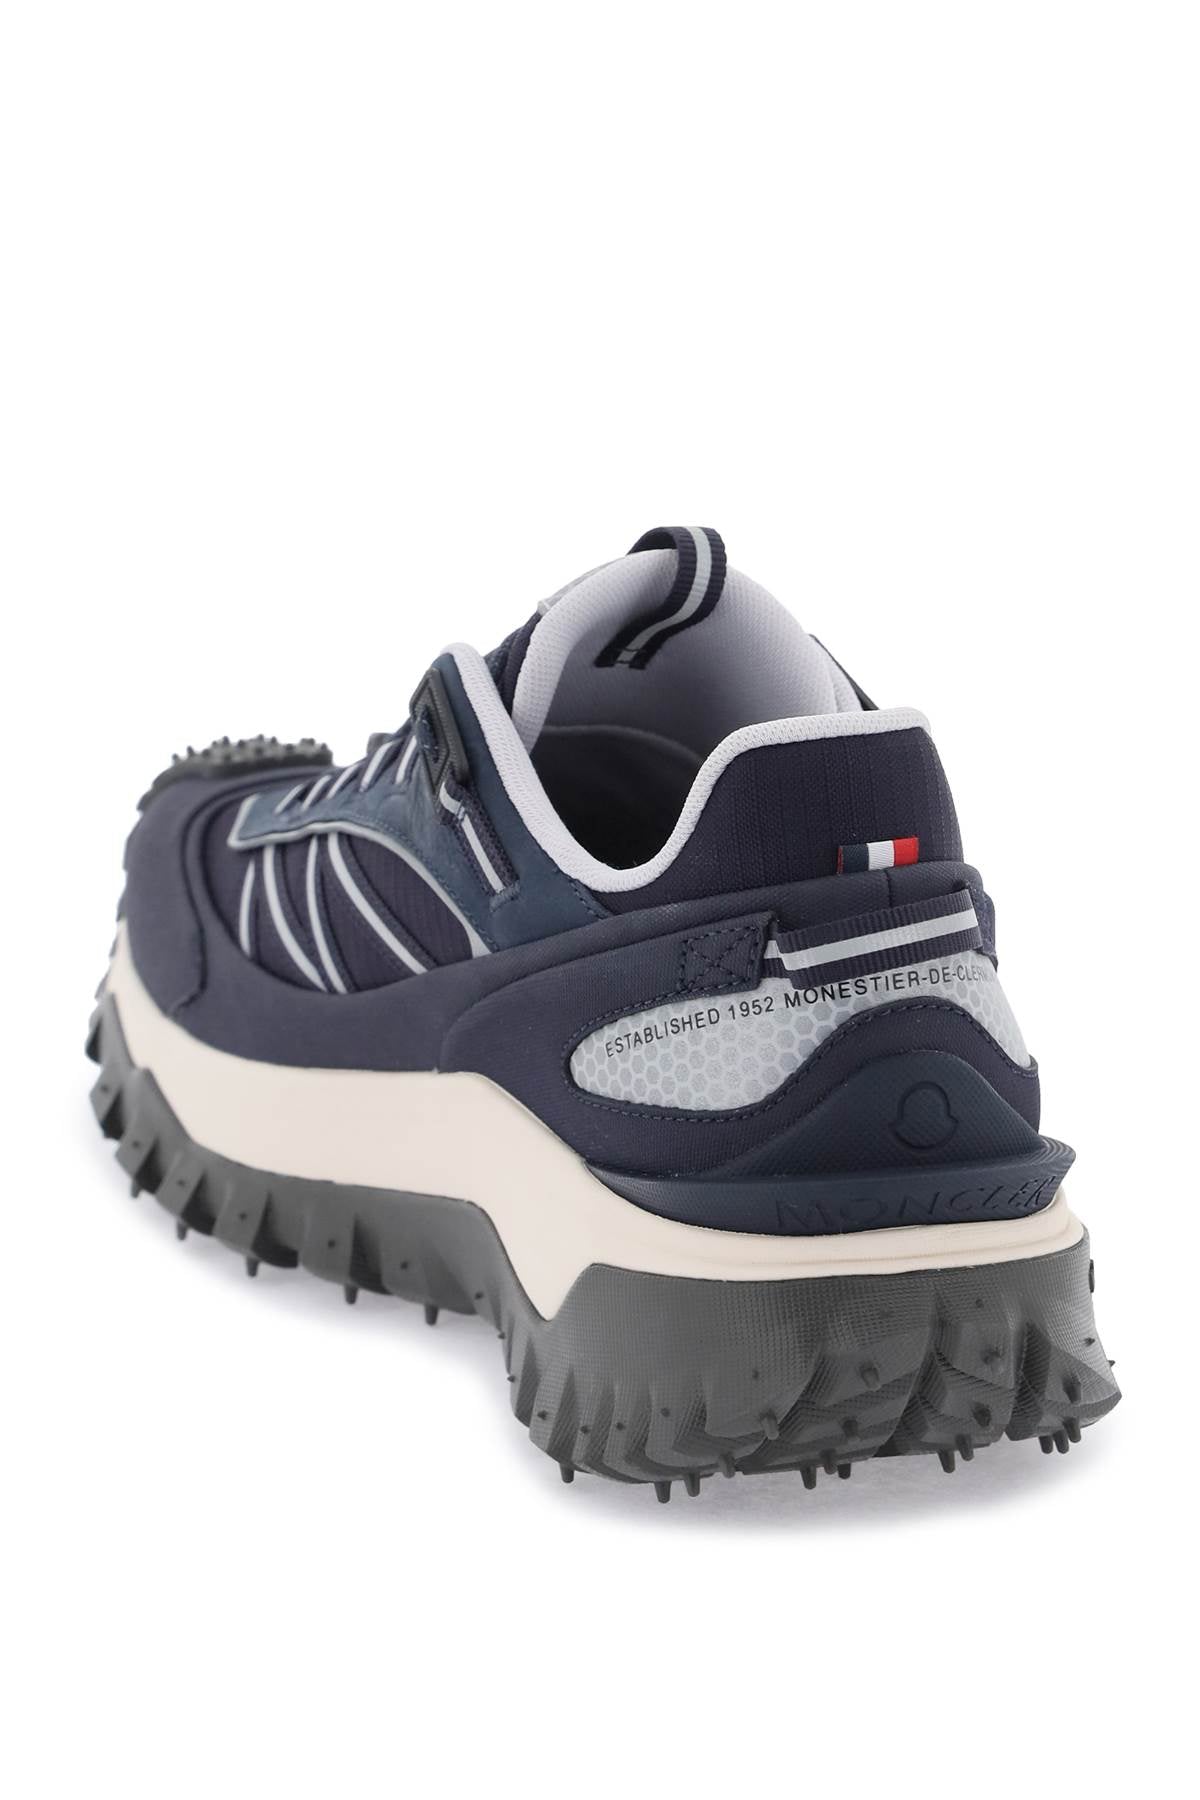 Giày Sneakers Blue kỹ thuật nam với lót Ortholite và đế cao su Vibram